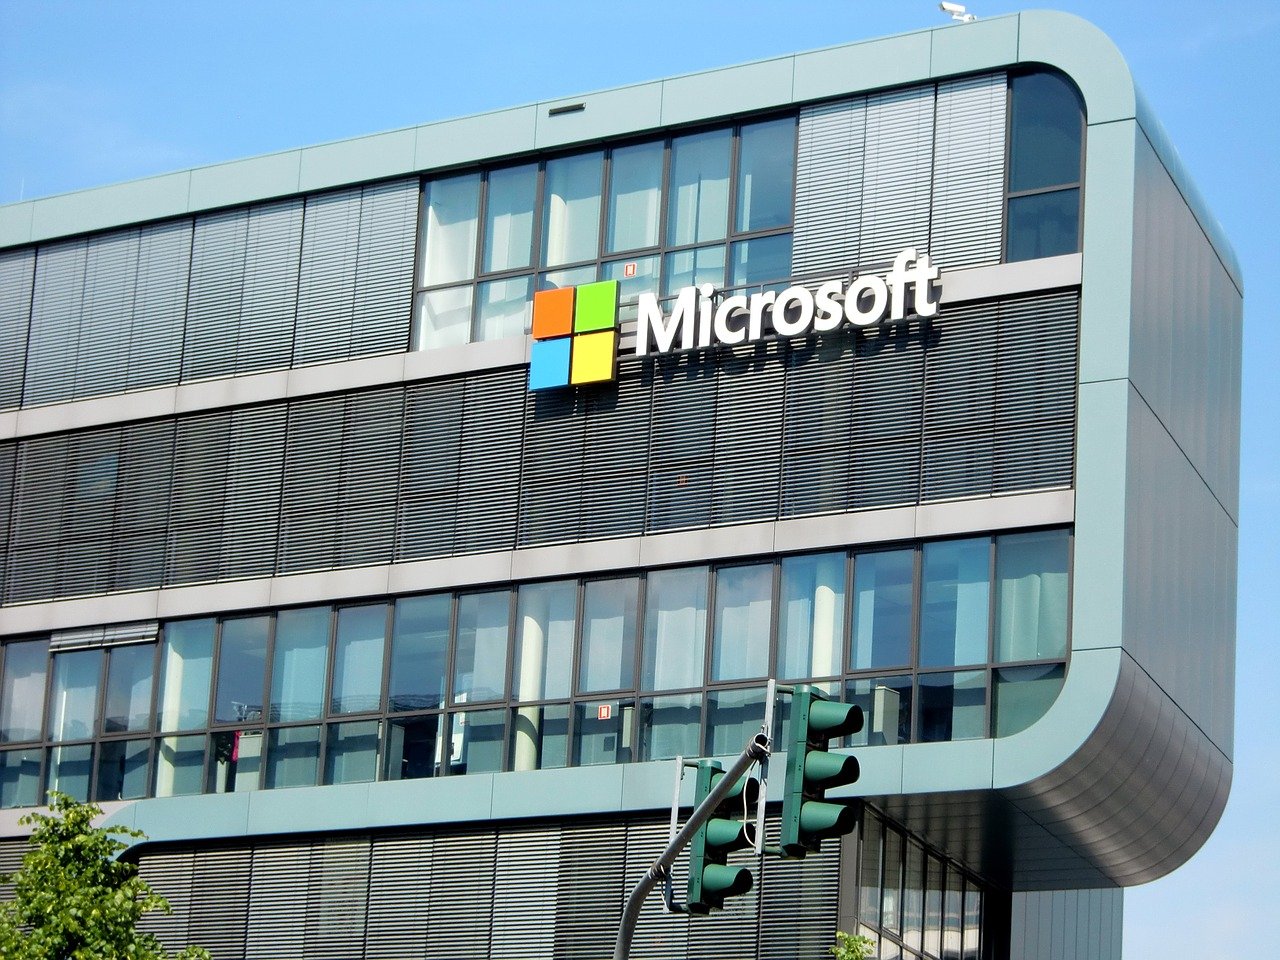 Une faille informatique découverte sur le cloud de Microsoft, des milliers d'entreprises prévenues